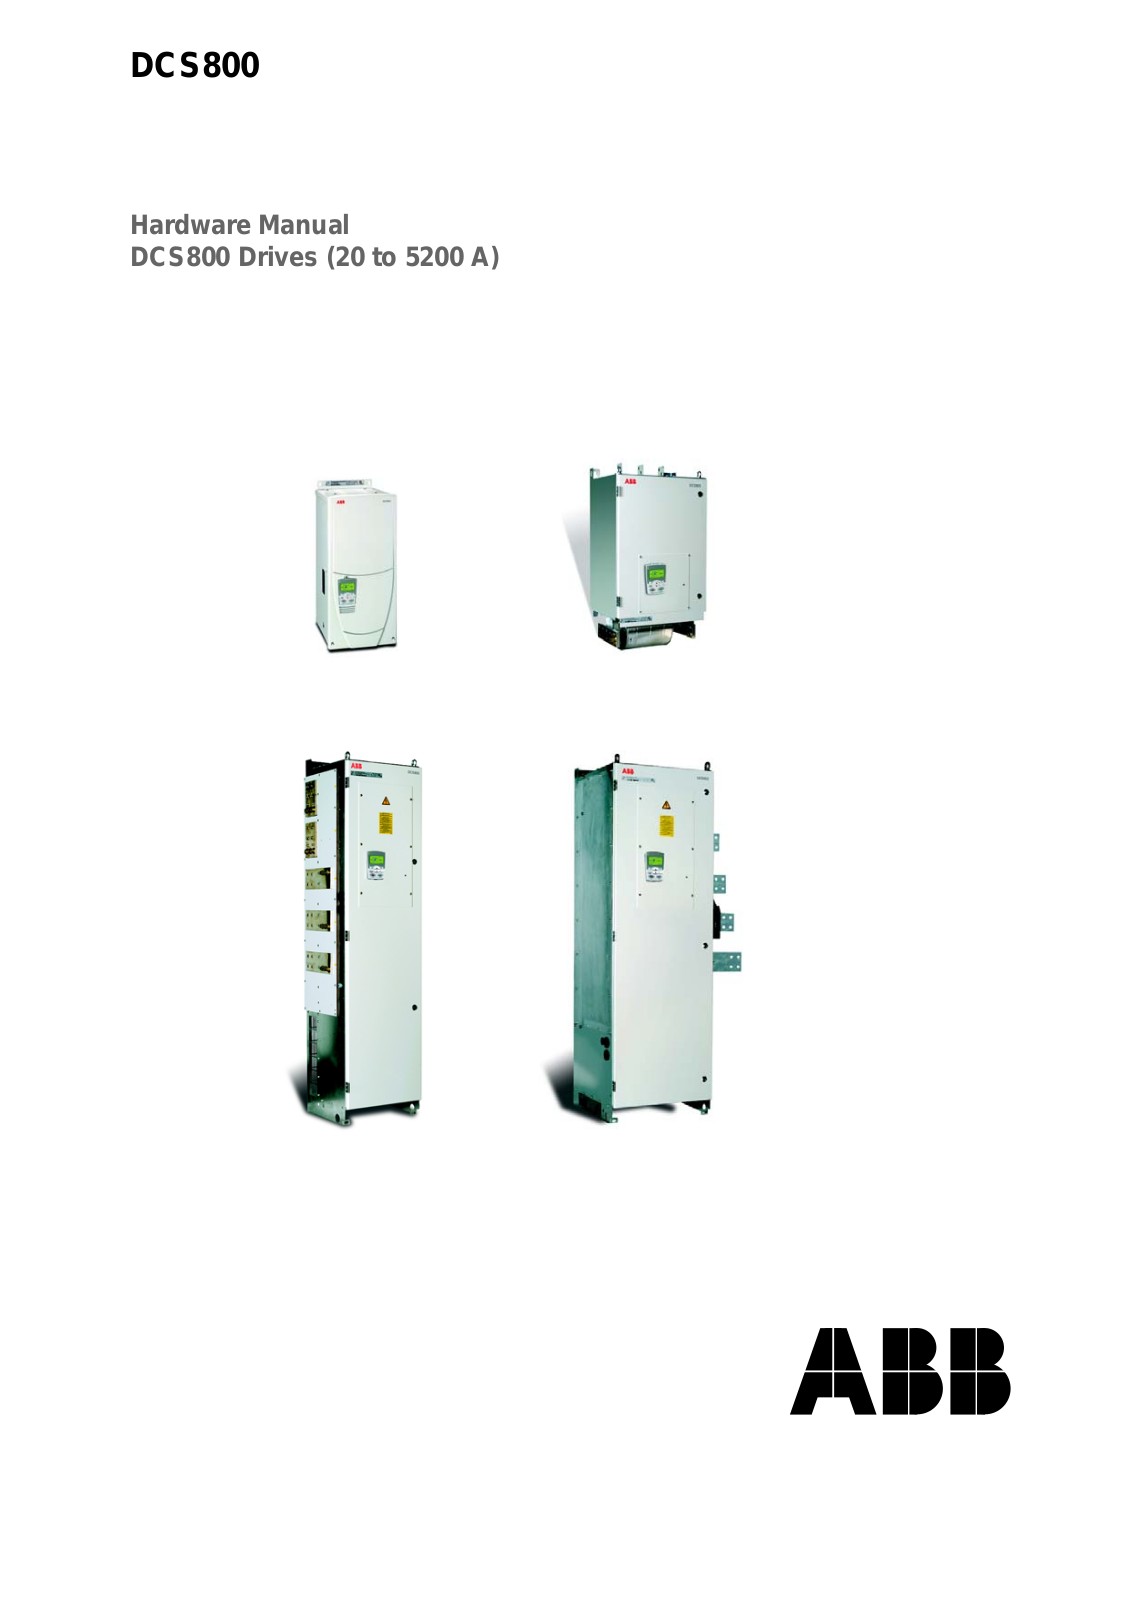 ABB DCS800 Hardware Manual